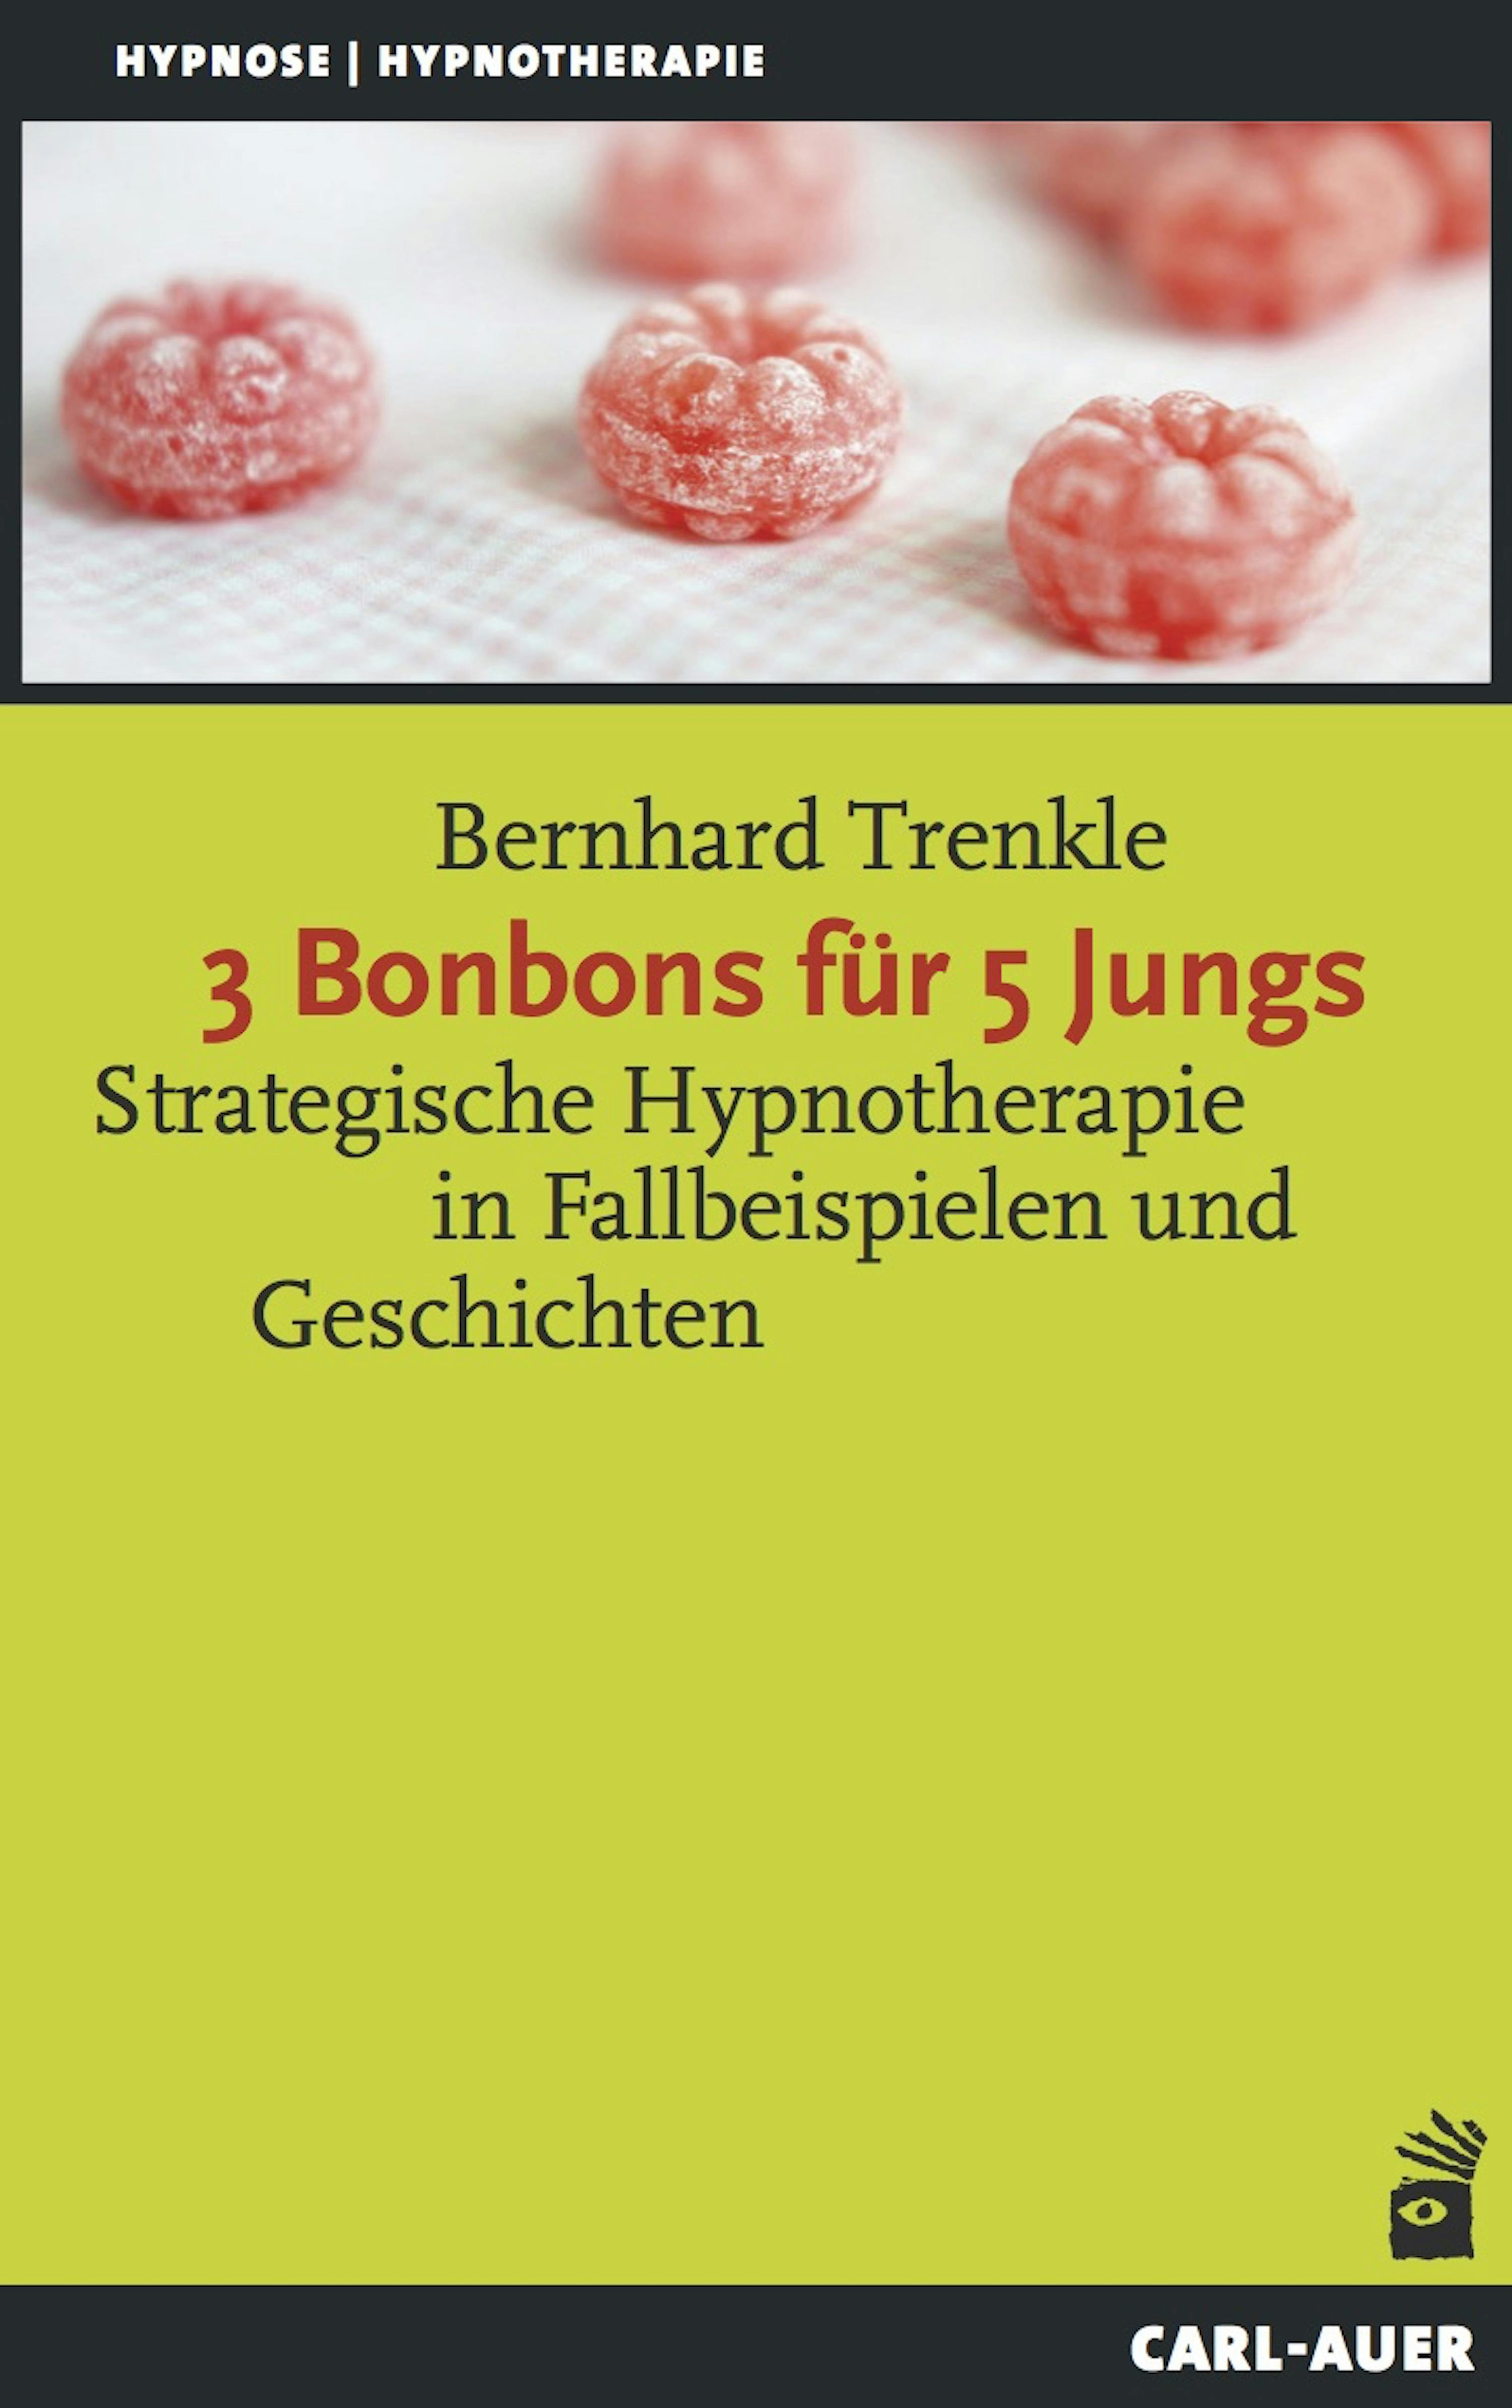 3 Bonbons für 5 Jungs: Strategische Hypnotherapie in Fallbeispielen und Geschichten - Bernhard Trenkle